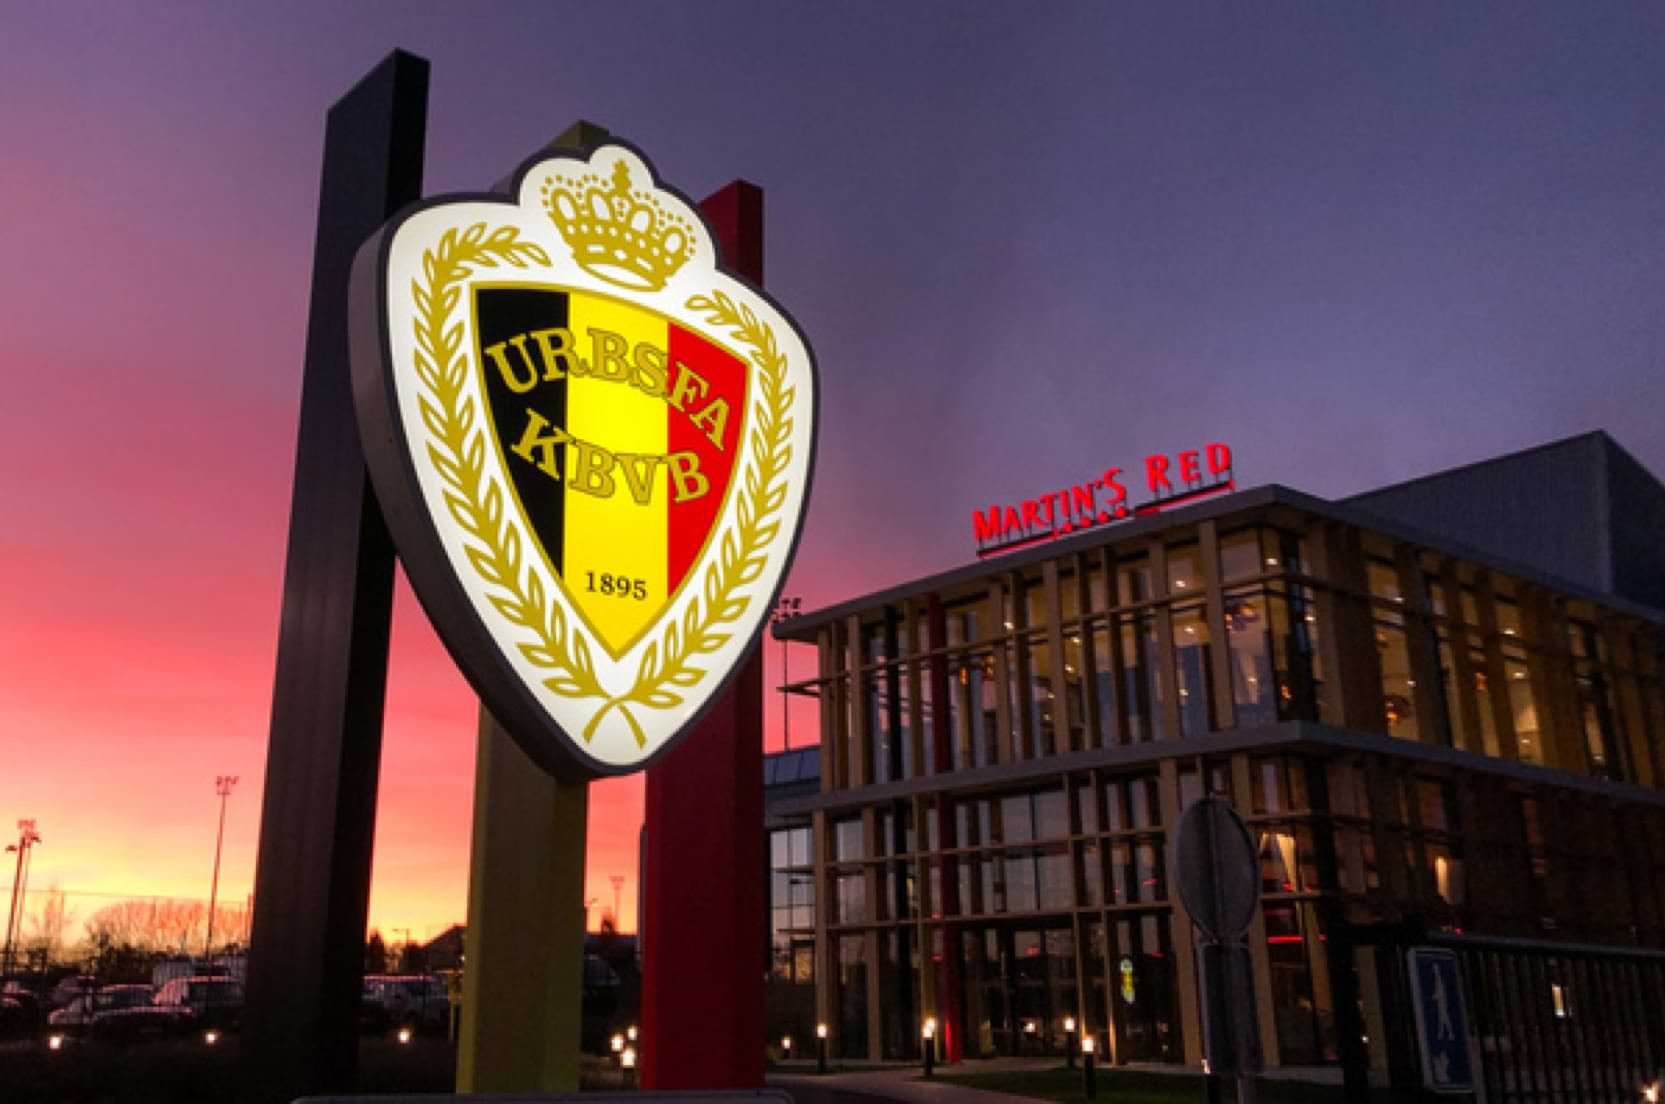 Koninklijke Belgische Voetbalbond